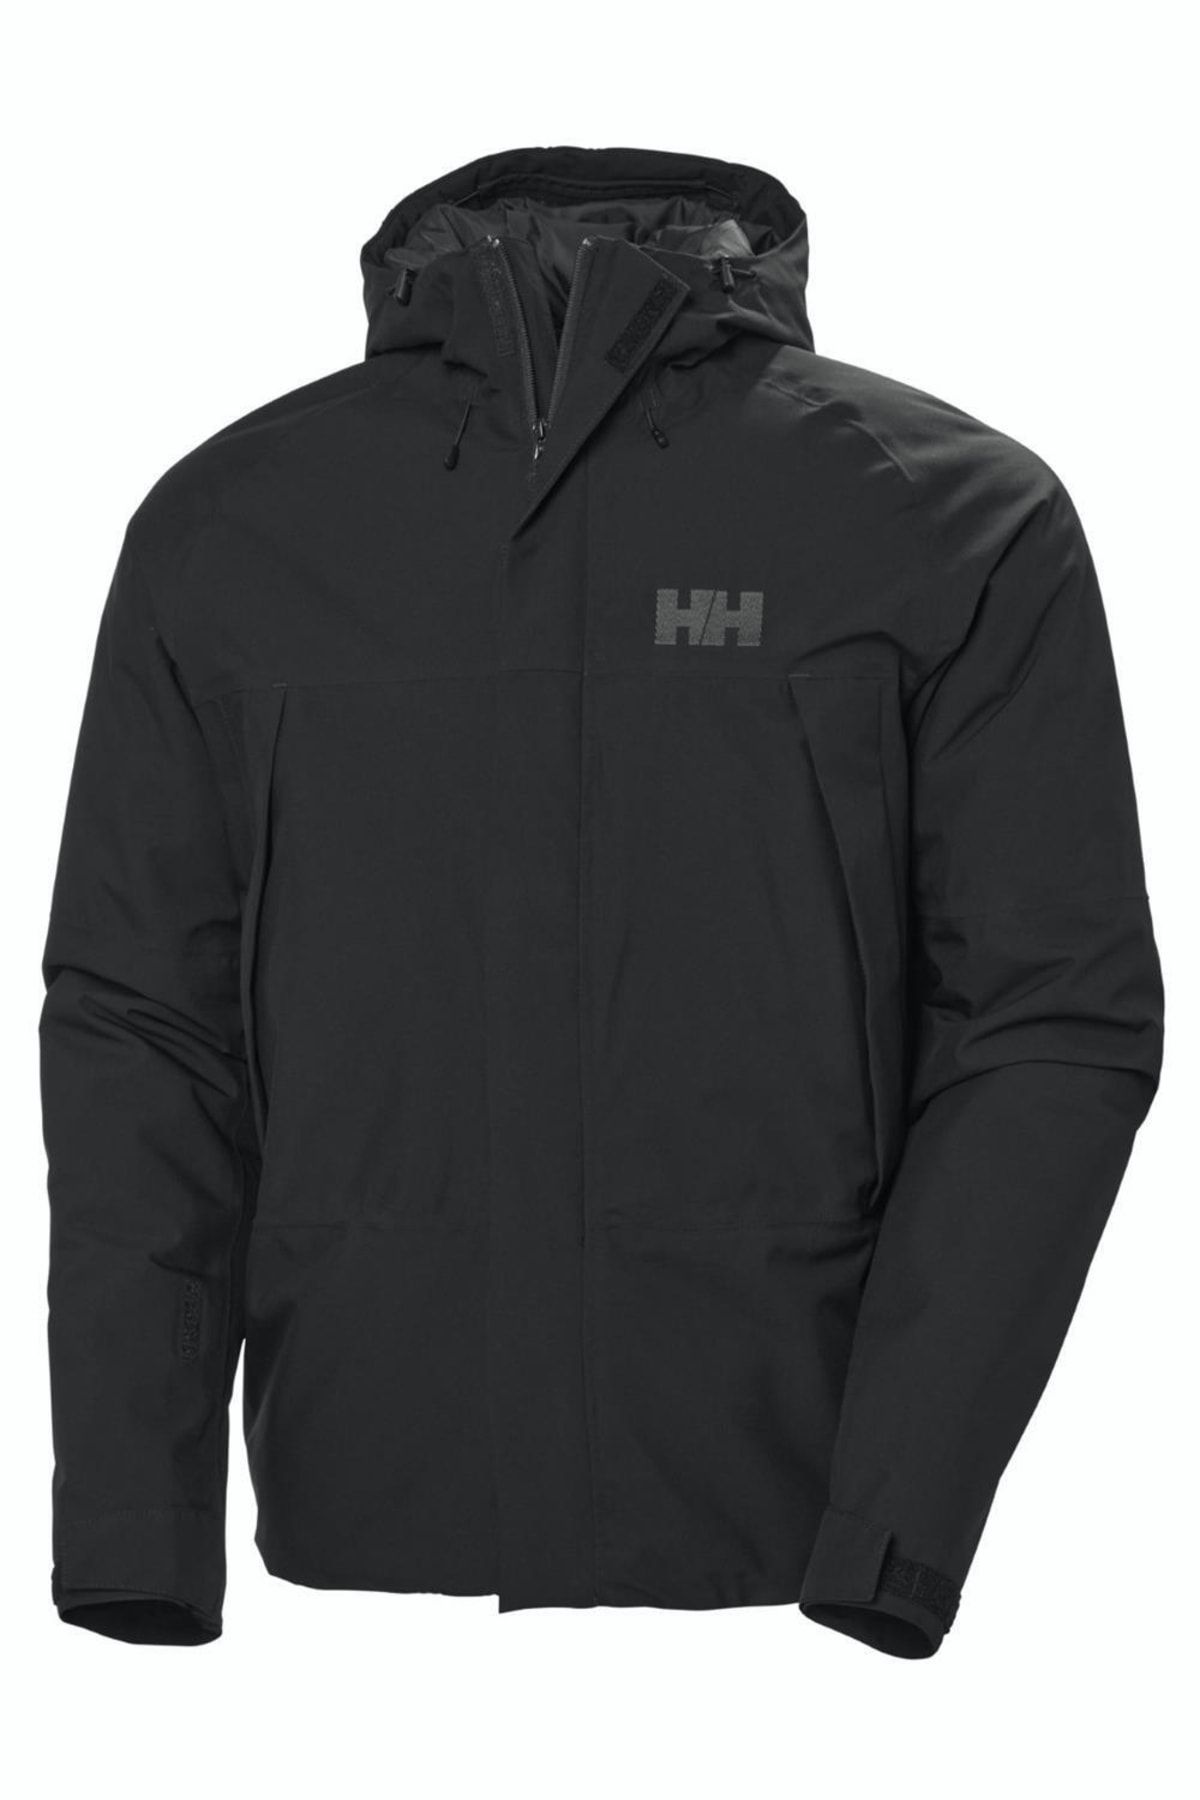 Helly Hansen Hh Banff Insulated Jacket Erkek Mont Hha.990